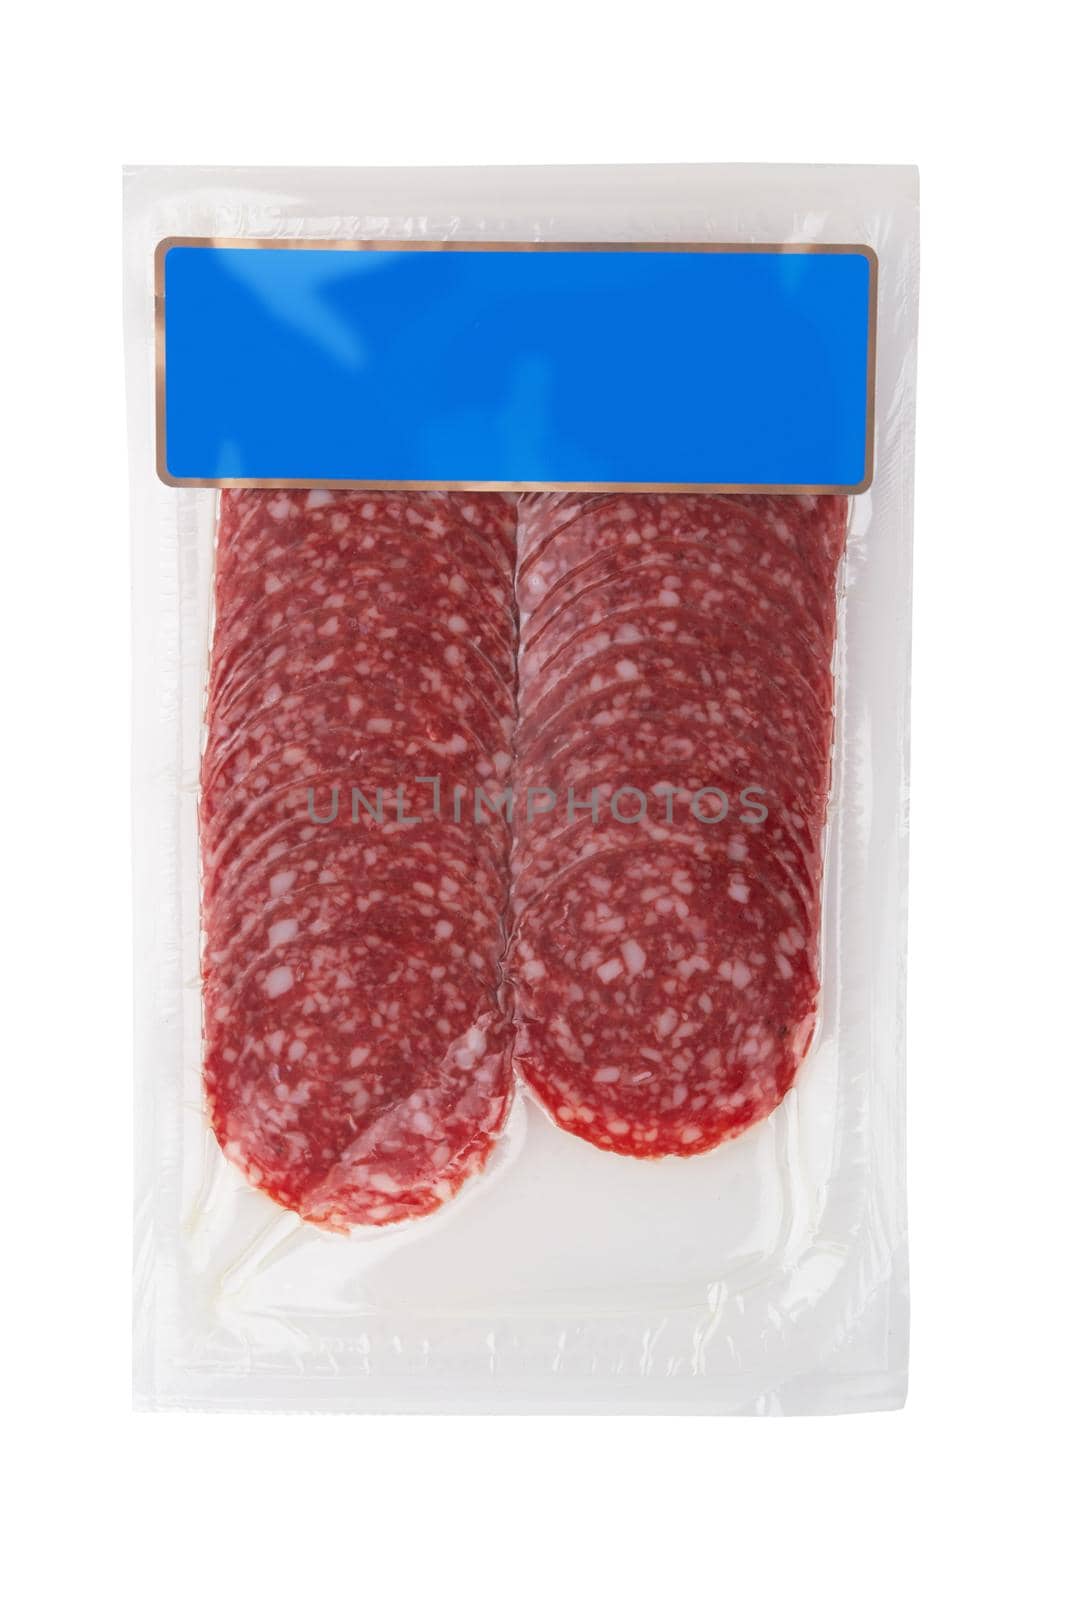 Vacuum packed sausage slices by pioneer111